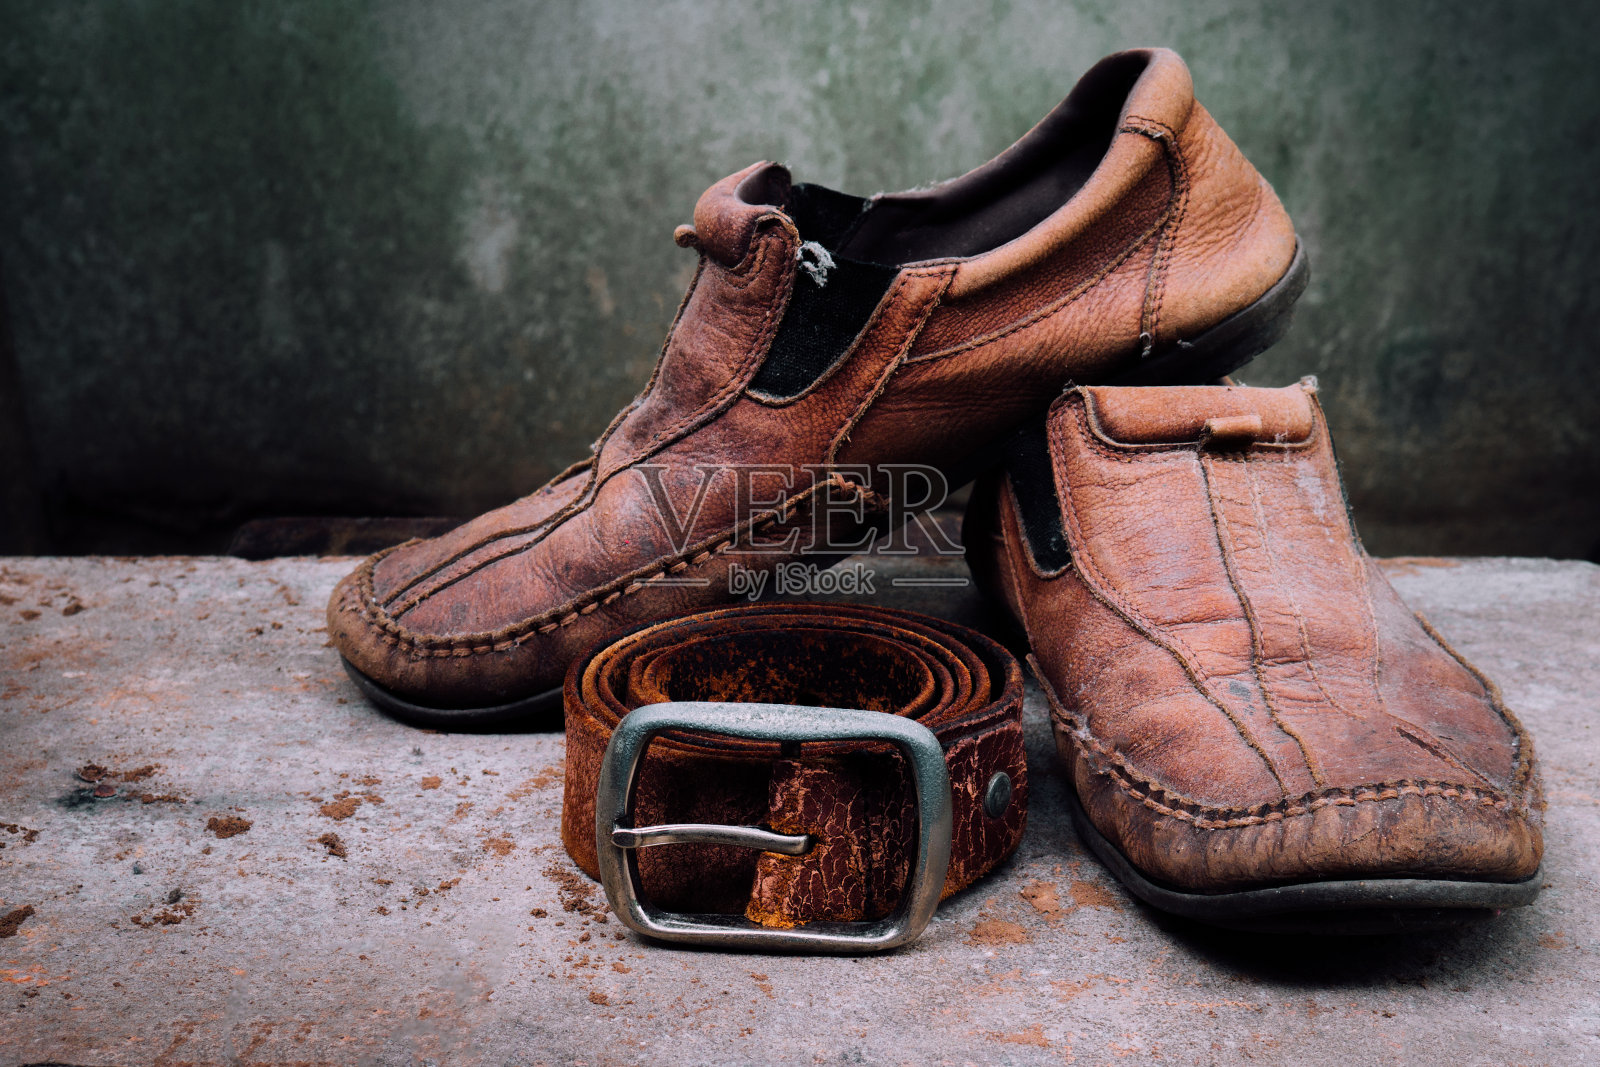 仍然生活旧皮鞋和皮带。它更多的是肮脏和破旧的皮肤。是时候换新鞋或修理了。照片摄影图片